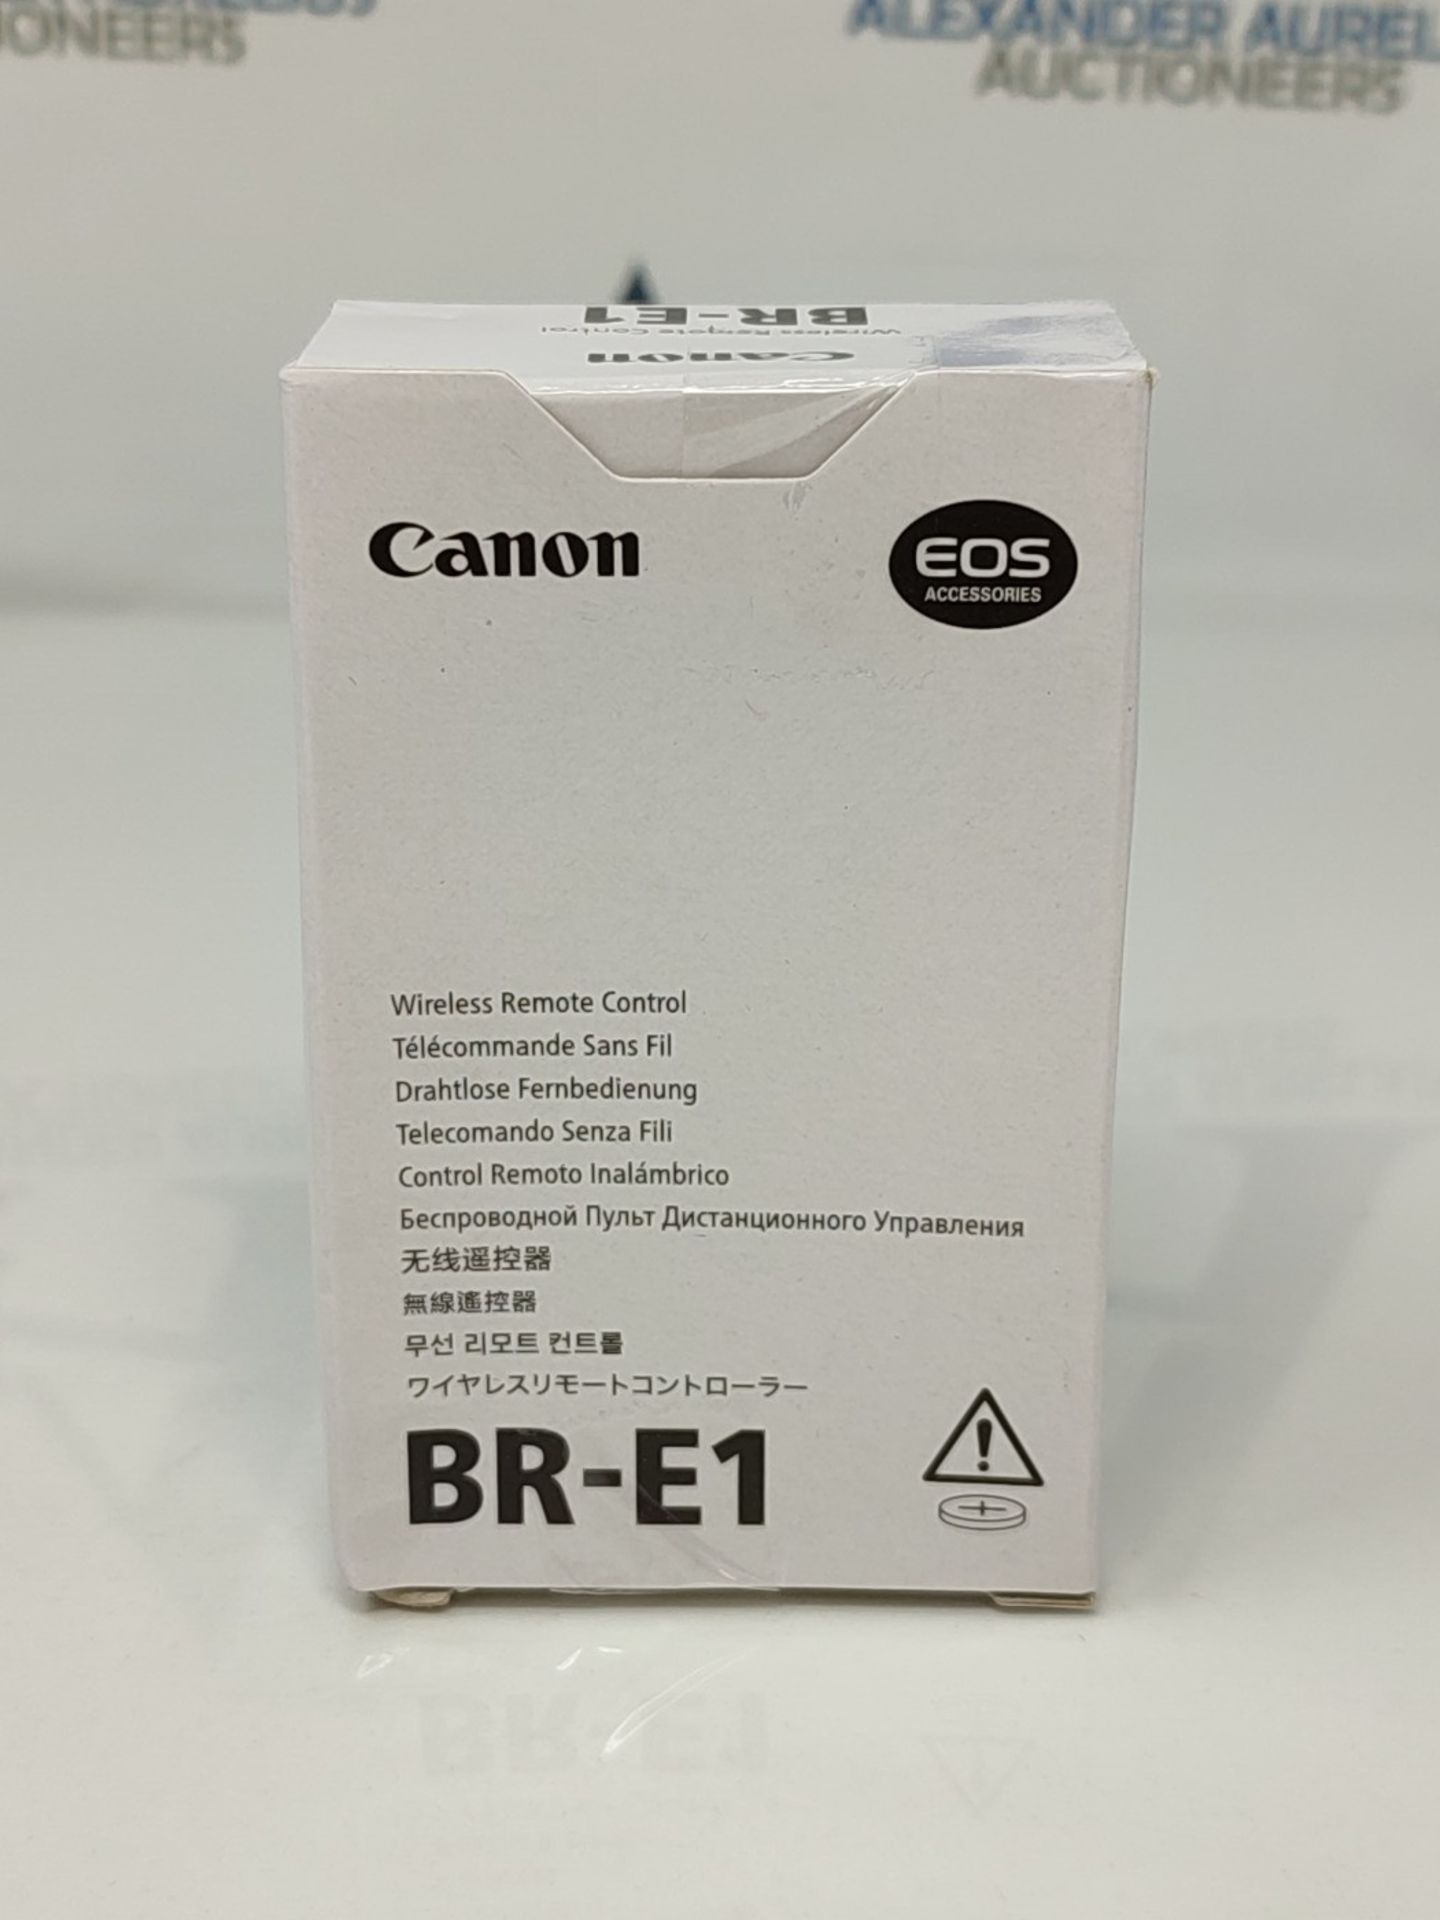 CANON Remote Control BR-E1 - Image 5 of 6